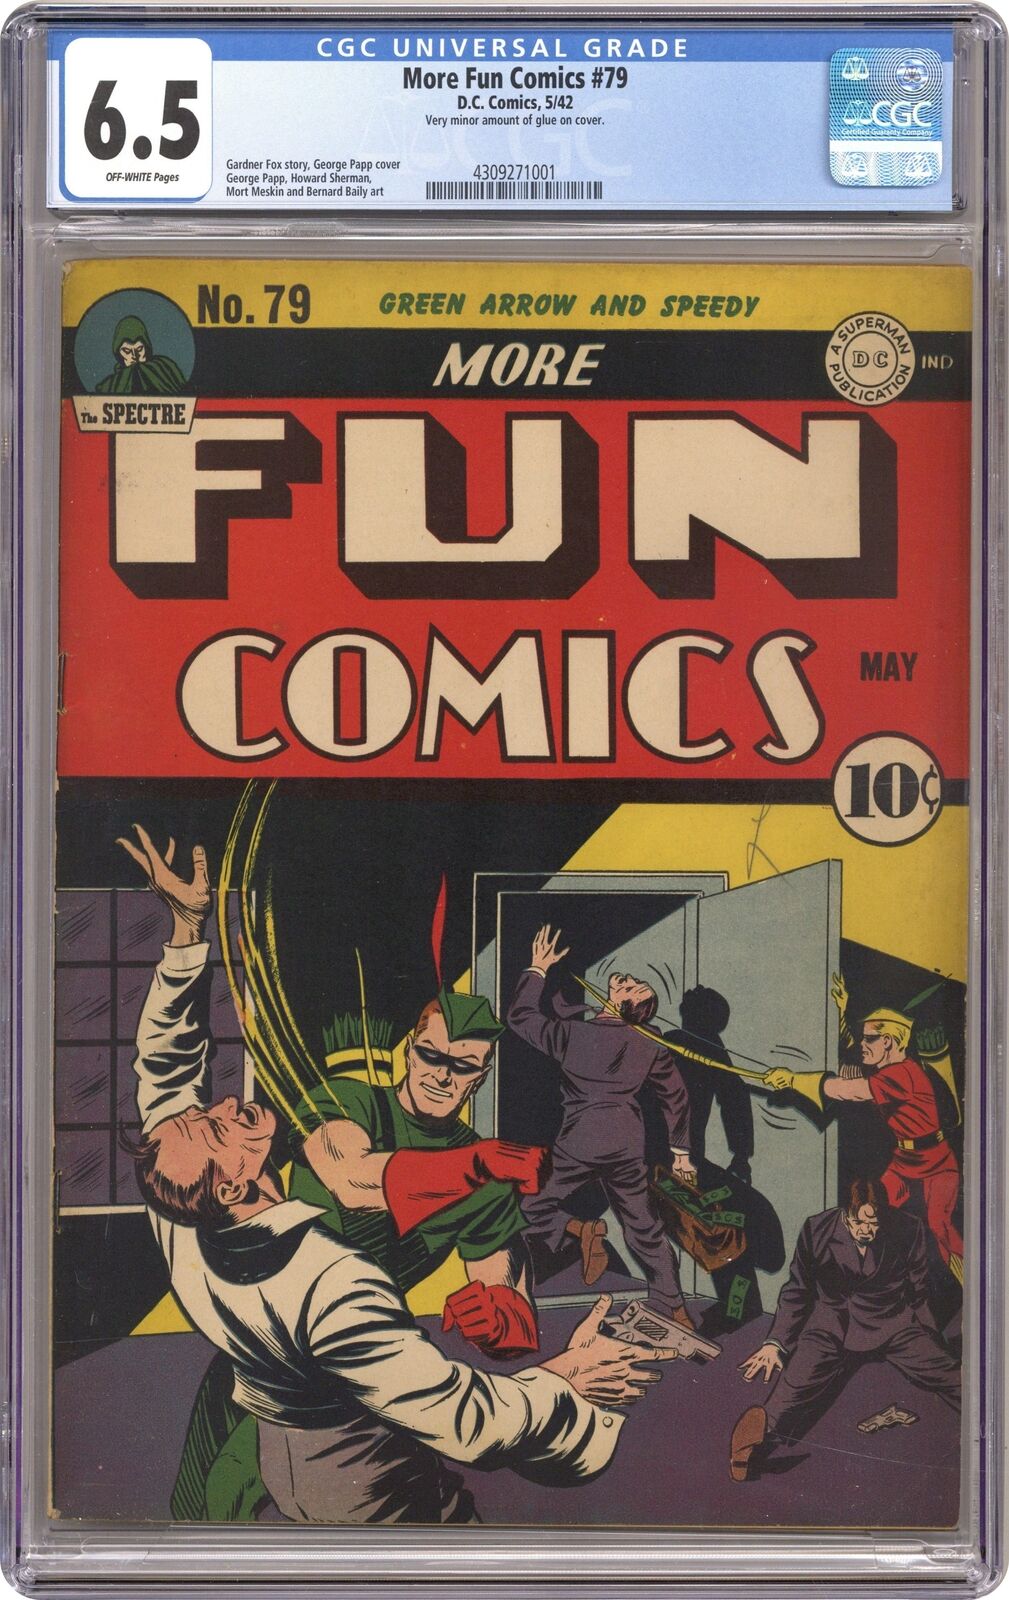 More Fun Comics #79 CGC 6.5 1942 4309271001